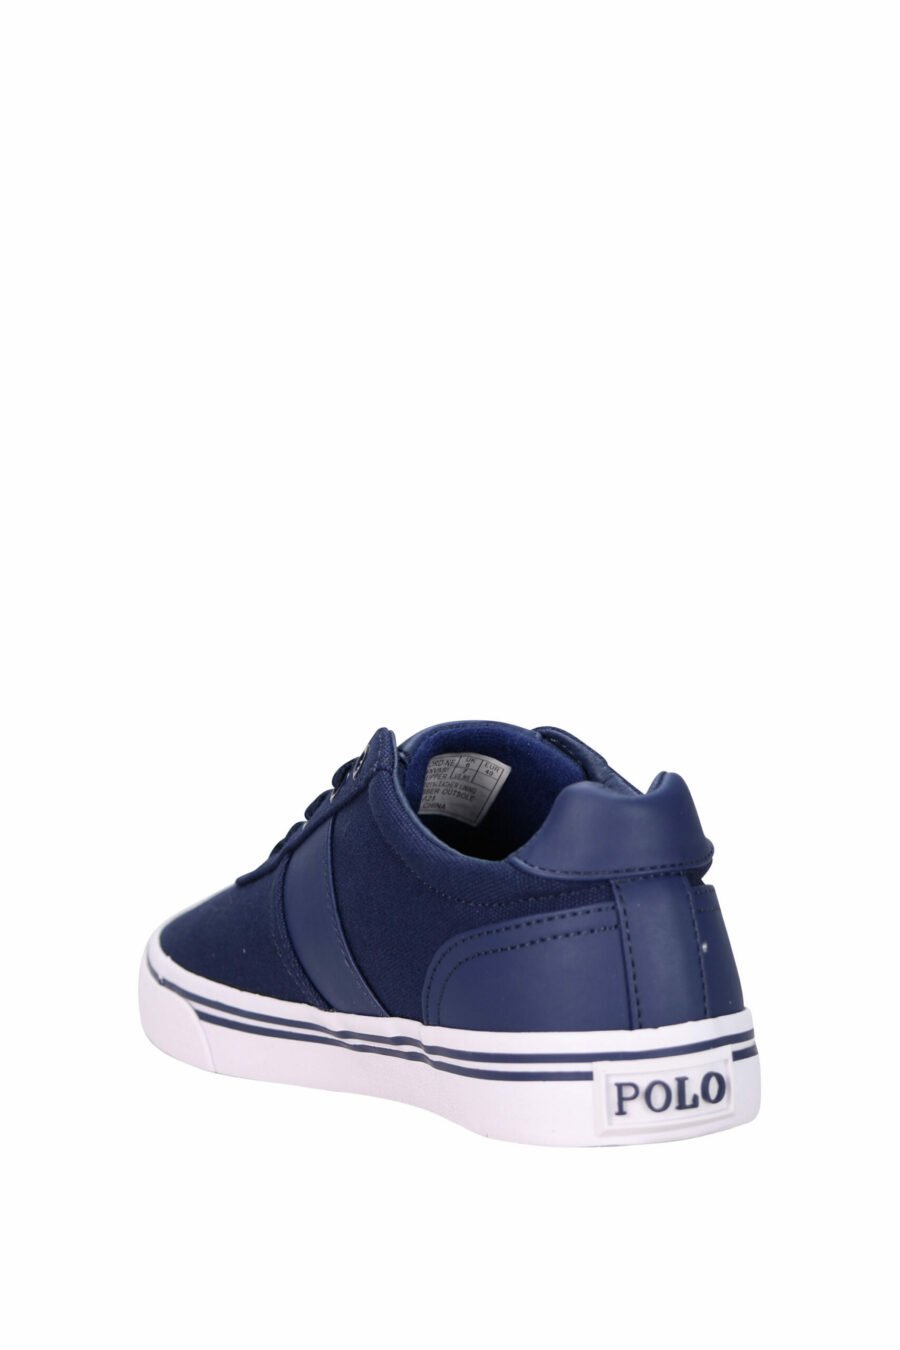 Zapatillas azules oscuras con minilogo "polo" y suela blanca - 3611588439341 3 scaled